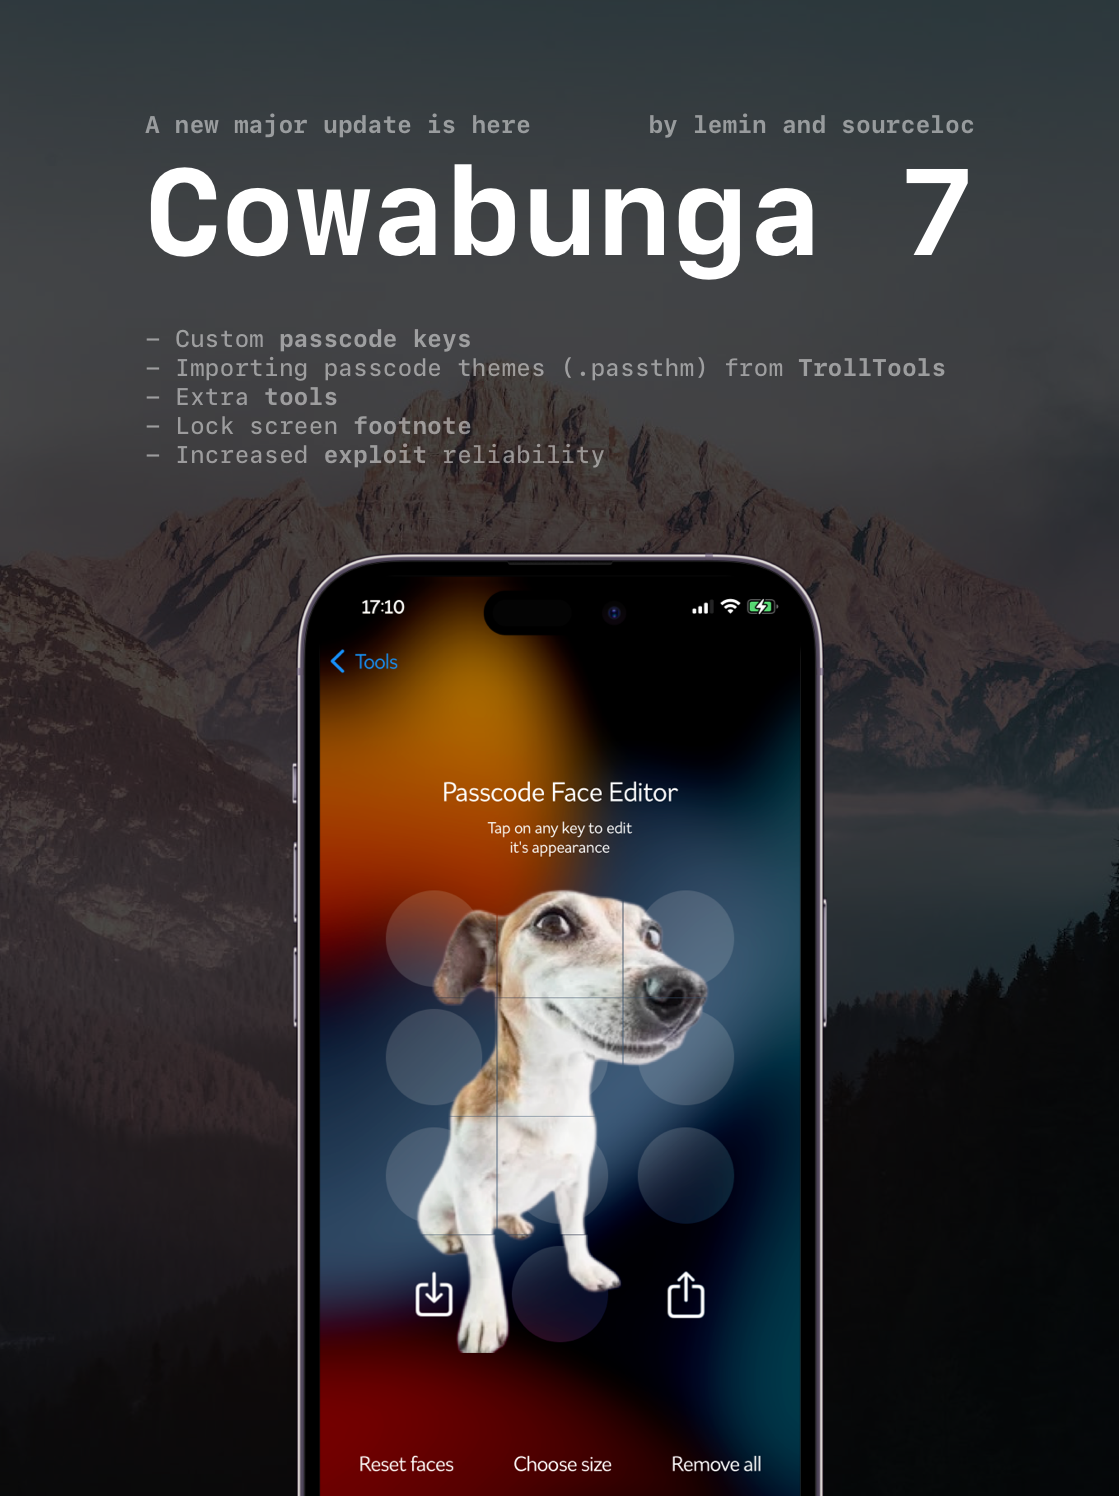 Nouvelles fonctionnalités de Cowabunga 7.0.